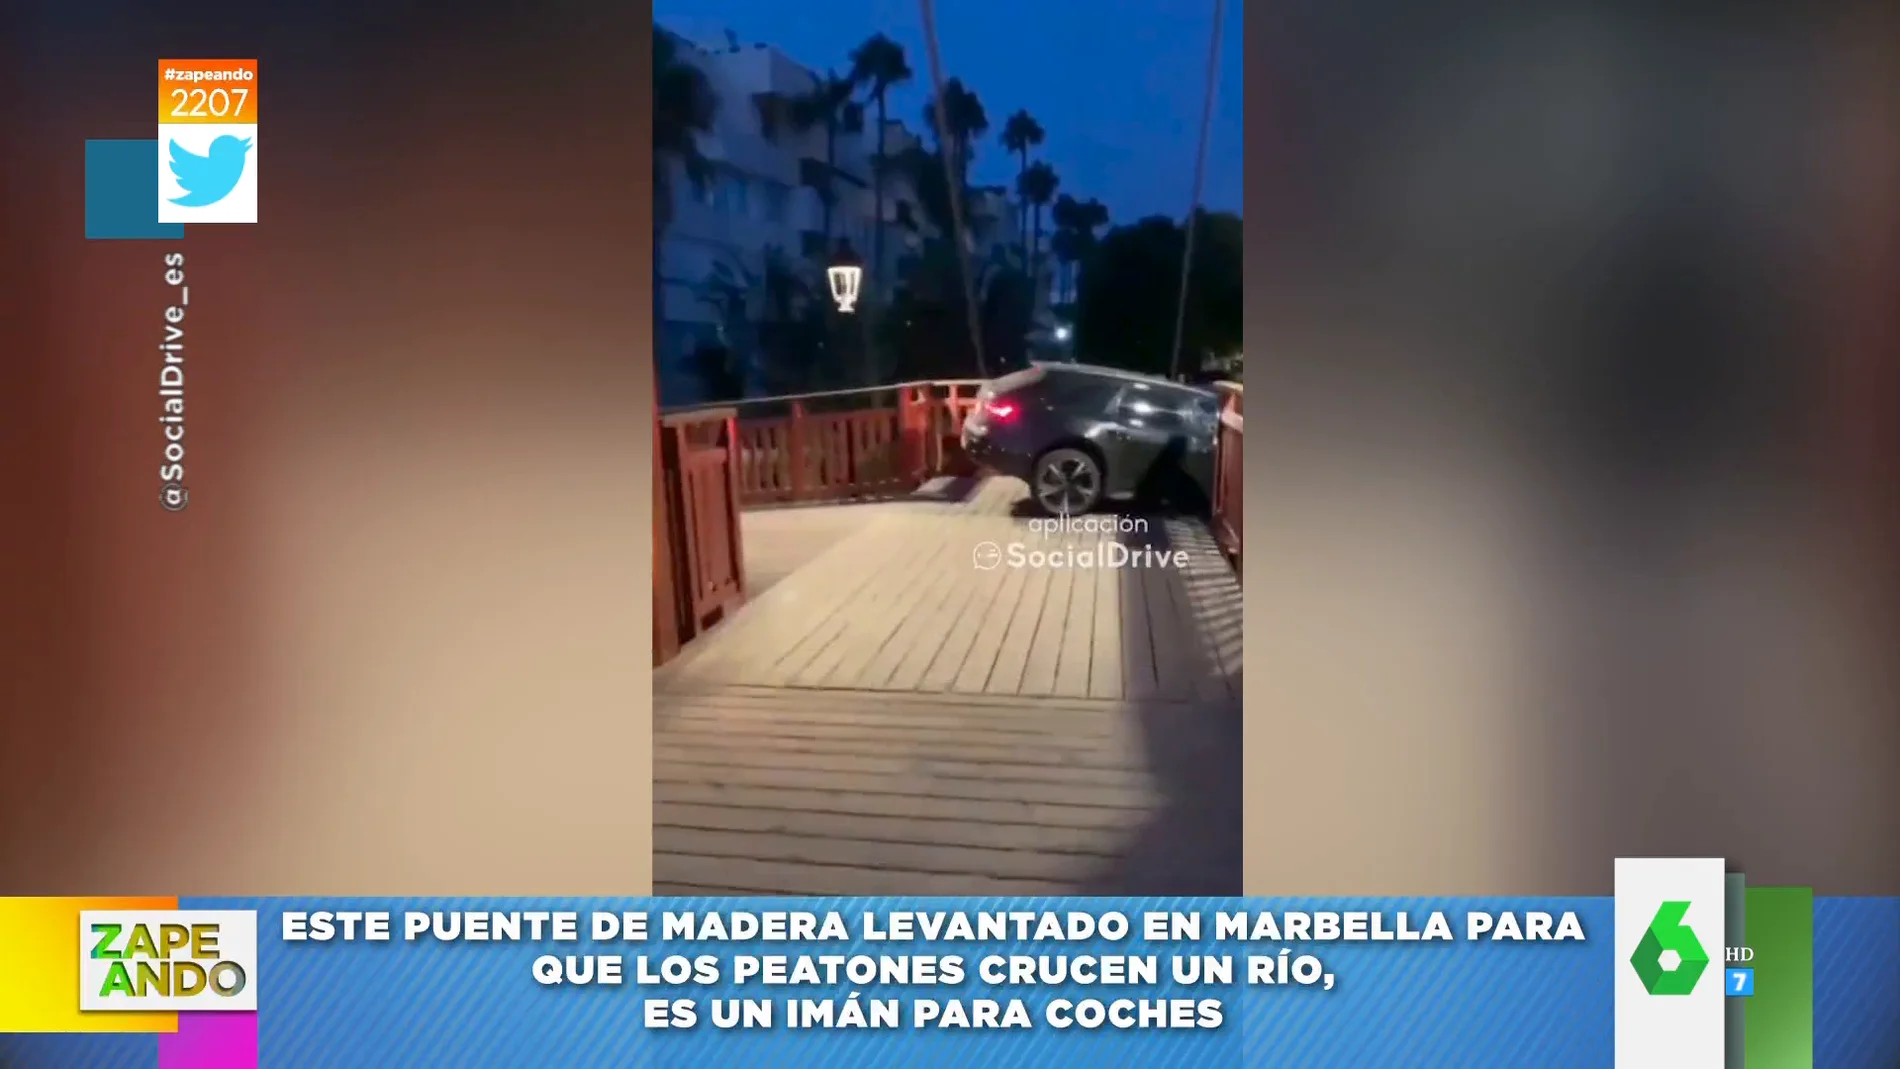 La razón por la que este puente de Marbella vuelve locos a los conductores: así se quedan atrapados